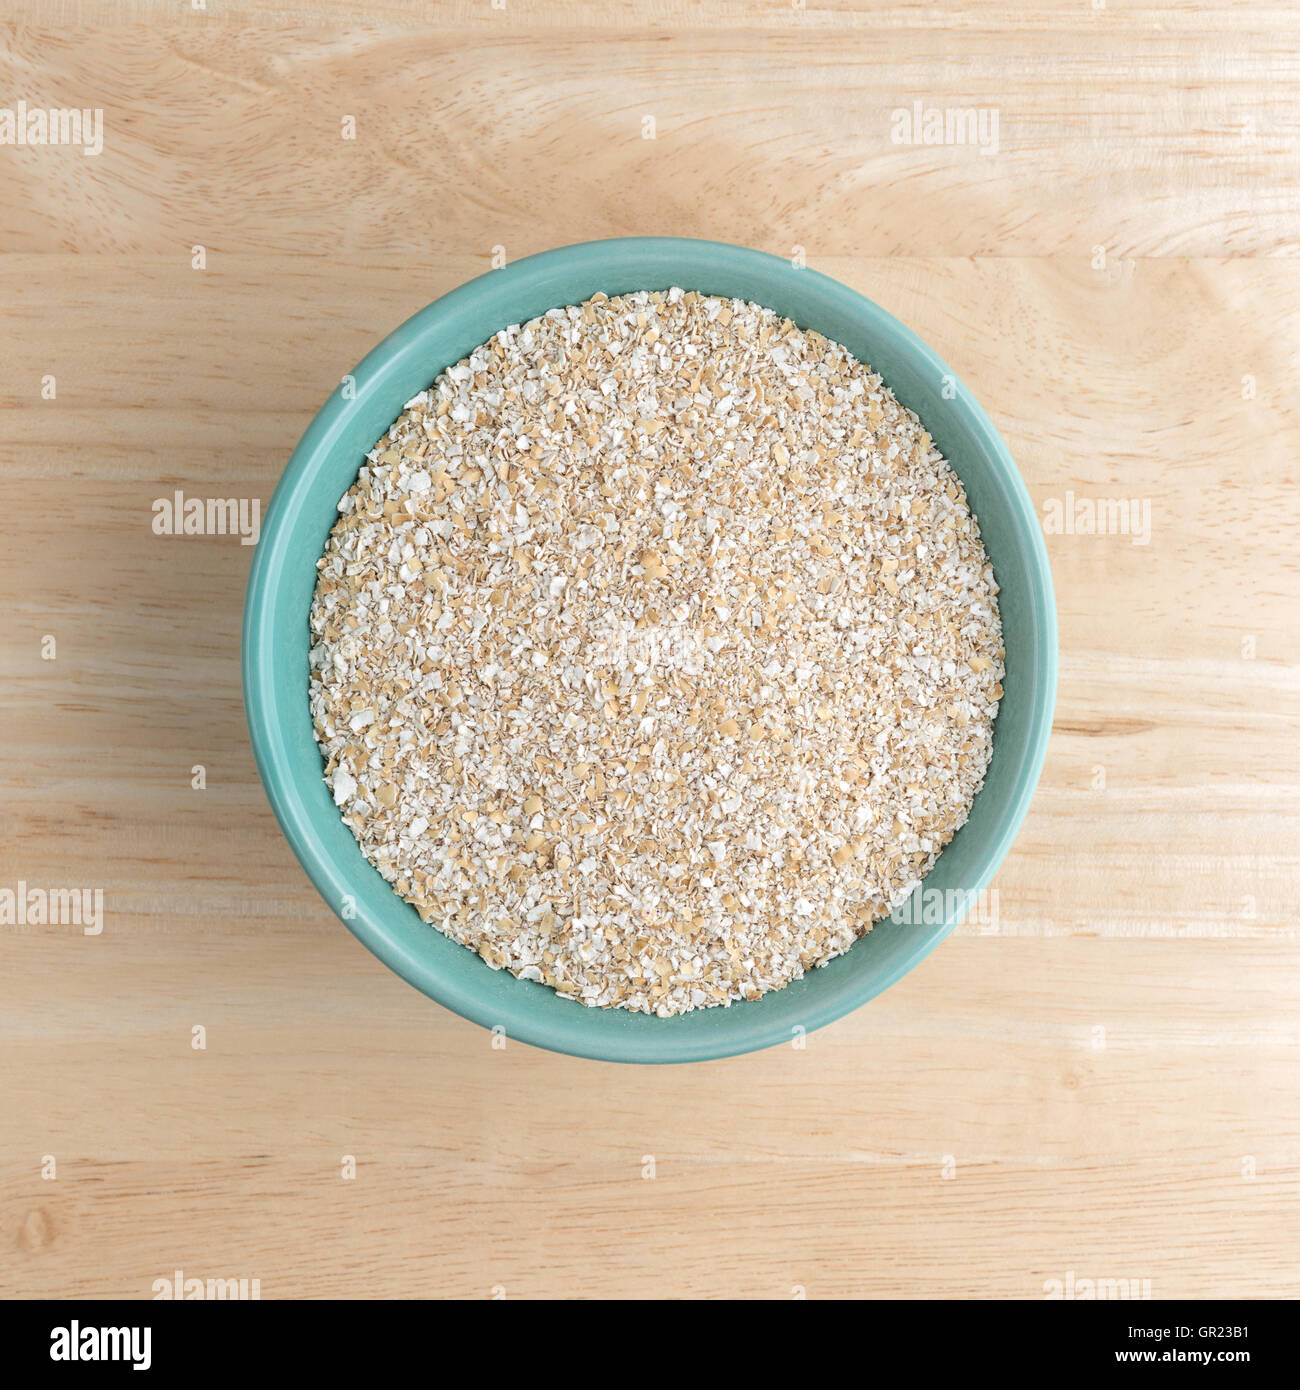 Vista in pianta secca di crusca di avena cereale a caldo in un recipiente verde sulla cima di un tavolo di legno. Foto Stock